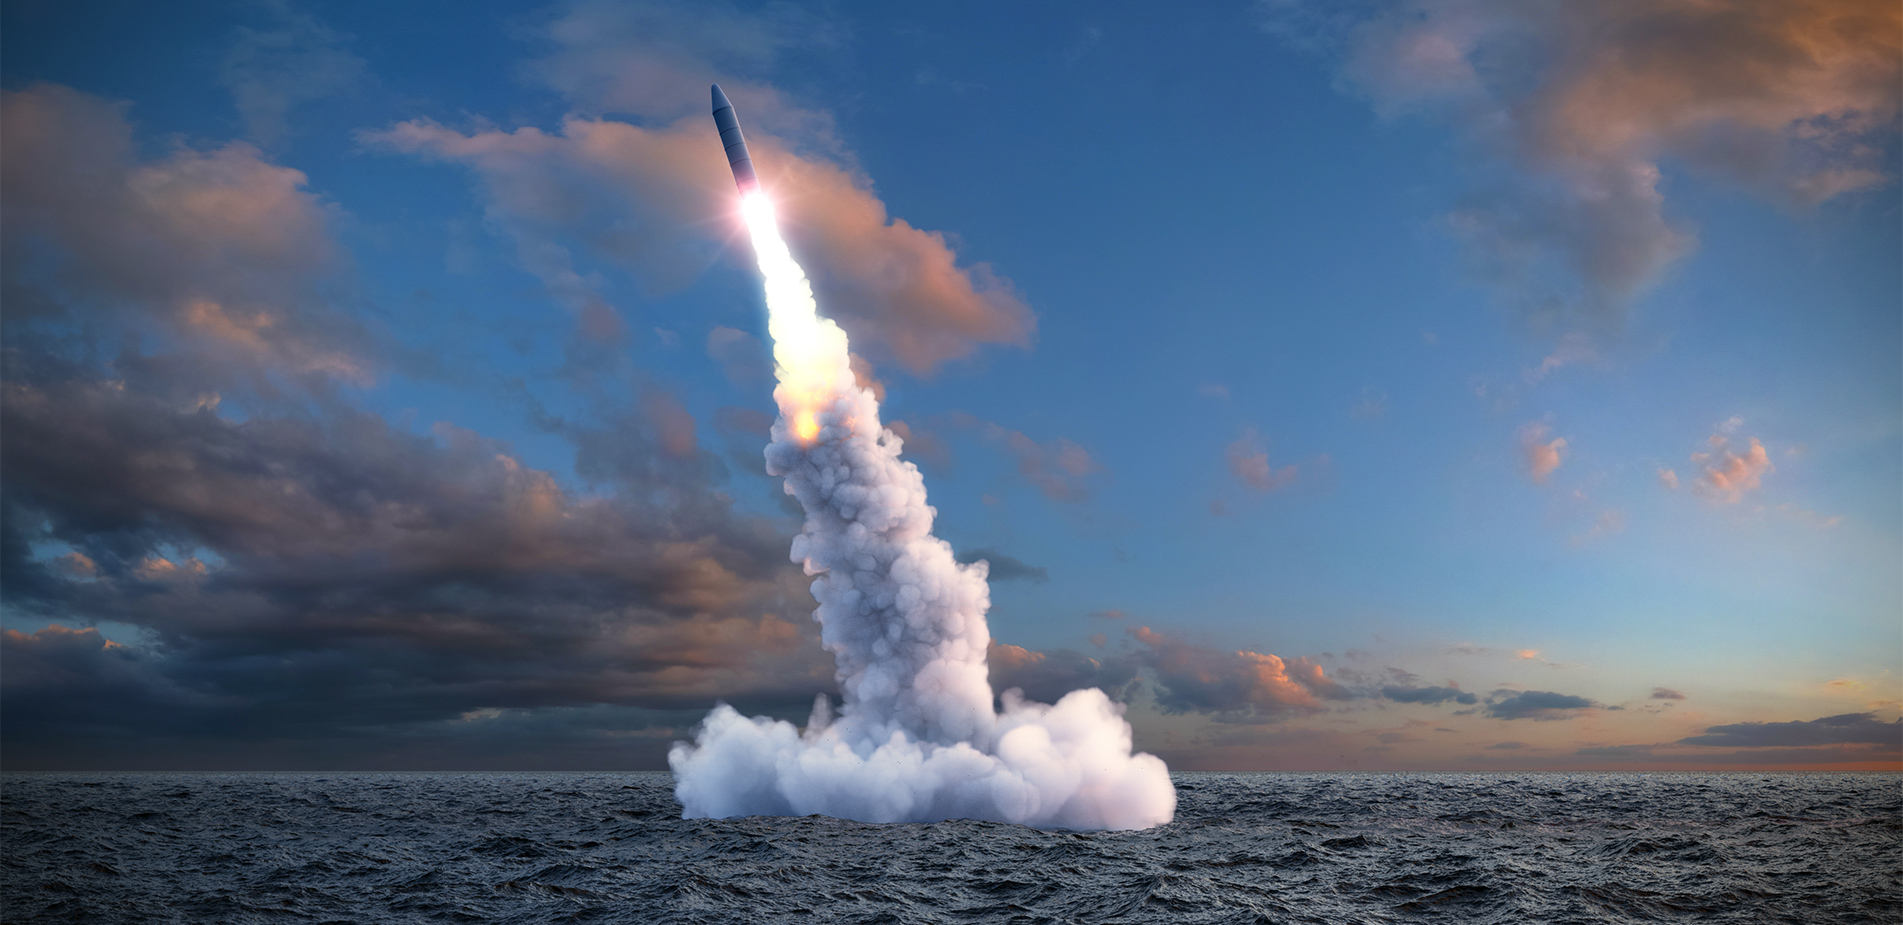 Η Ρωσία εξοπλίζει νέα πυρηνικά υποβρύχια με υπερηχητικούς πυραύλους